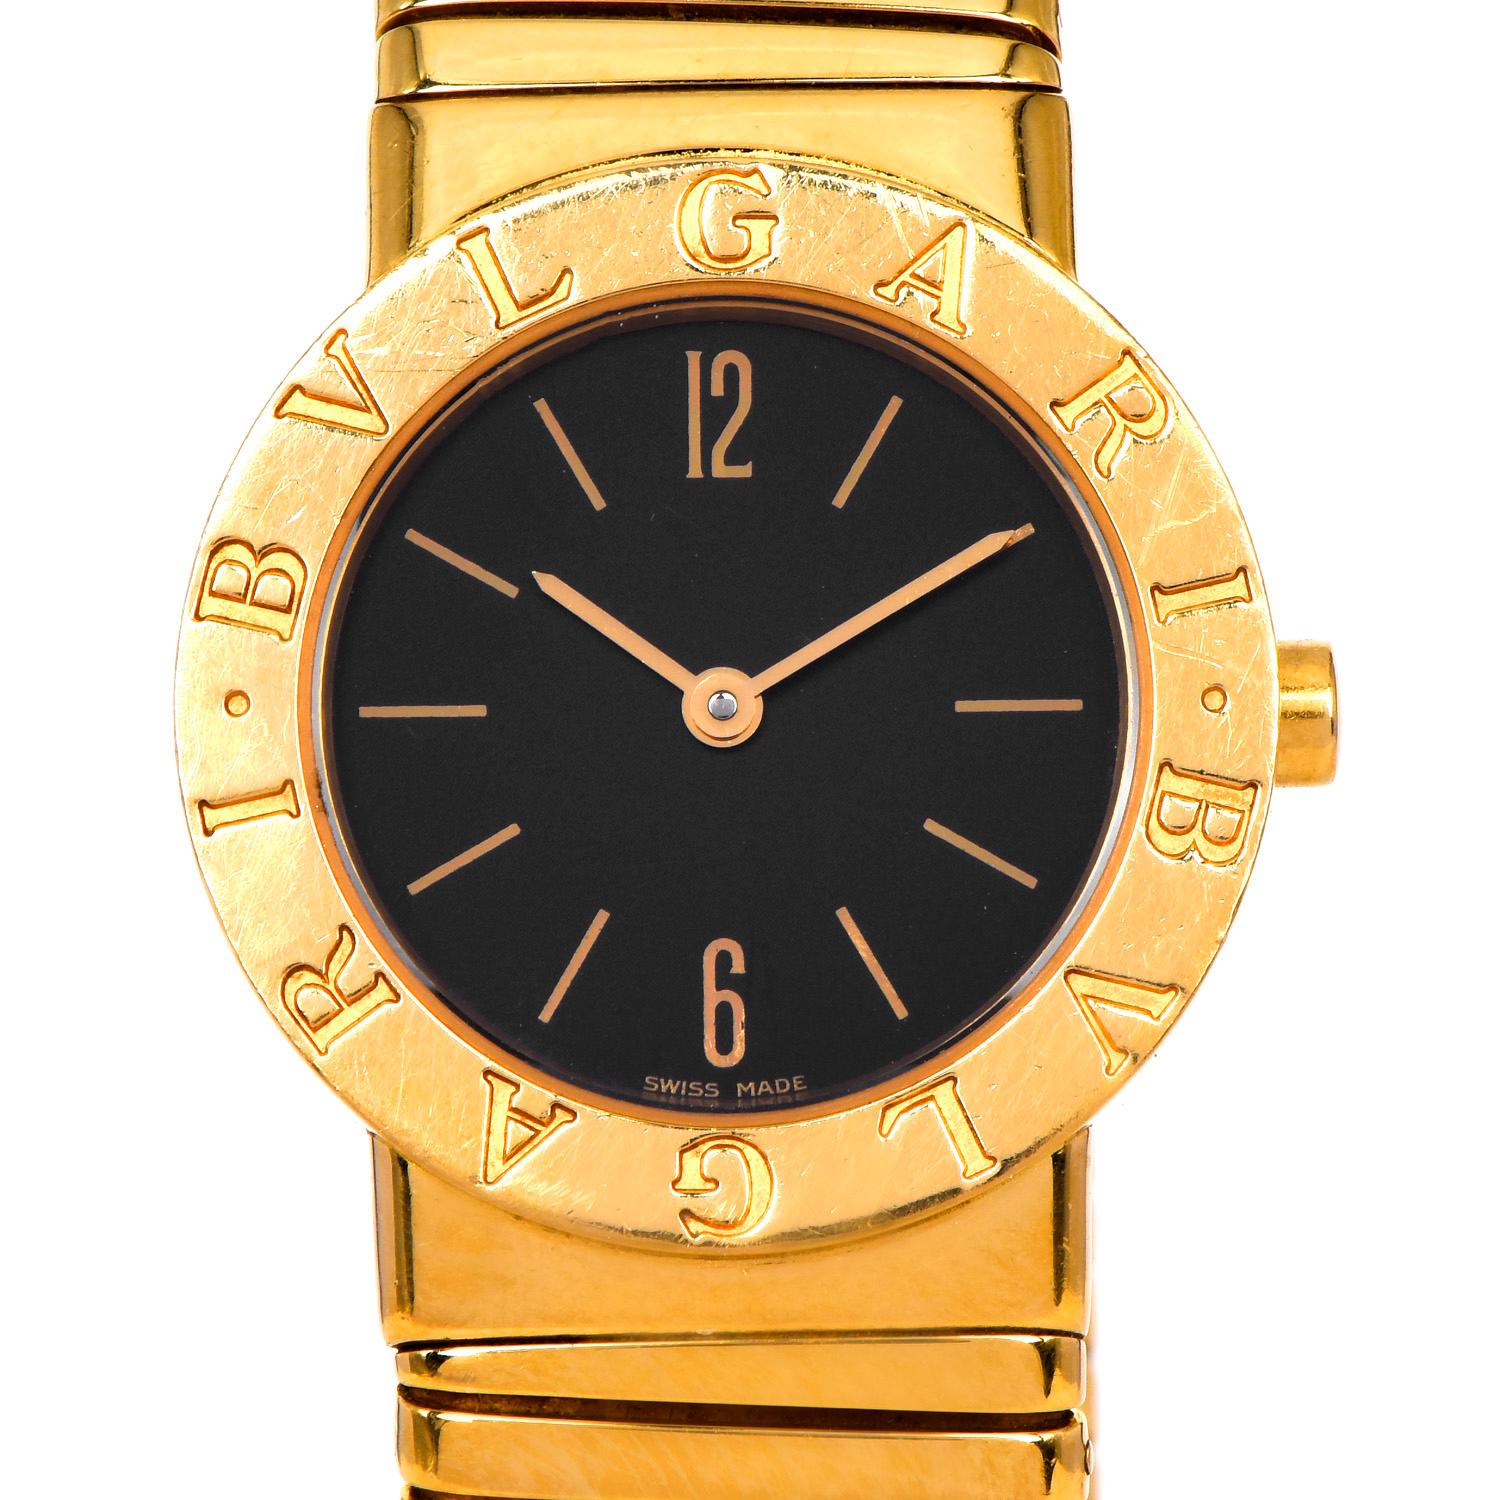 Cette montre Bvlgari Bulgari Tubogas pour dames de taille moyenne en or jaune 18 carats est un chef-d'œuvre intemporel très recherché, parfait pour être porté tous les jours.

Elle possède un magnifique cadran noir avec des index en or. Montre,